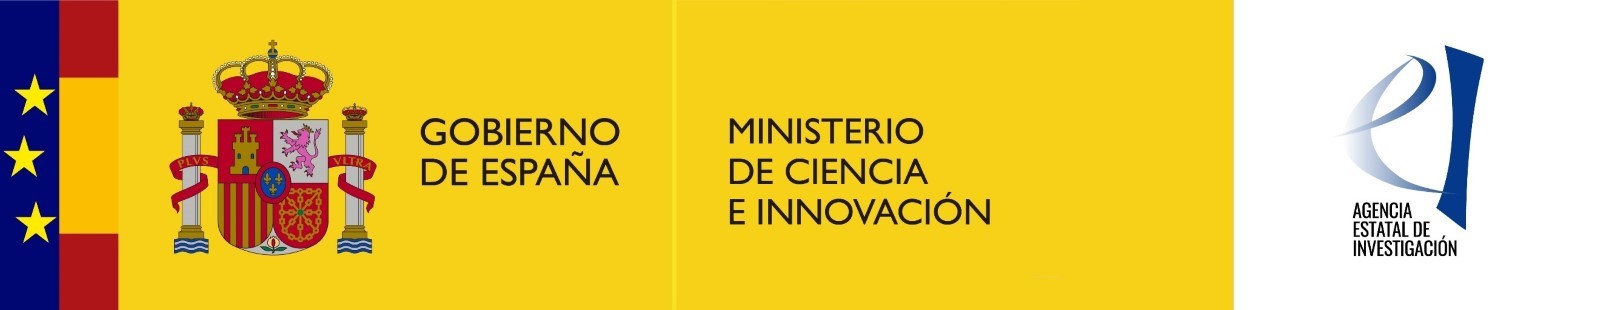 Esta actuación está subvencionada por la Agencia Estatal de Investigación, dependiente del Ministerio de Ciencia e Innovación, a través del Programa Estatal de Generación de Conocimiento y Fortalecimiento Científico y Tecnológico del sistema I+D+i, en el marco del Plan Estatal de Investigación Científica y Técnica y de Innovación 2017-2020.    Subvención: 176.367,78 €    Nº Expediente: ECT2019-000560 